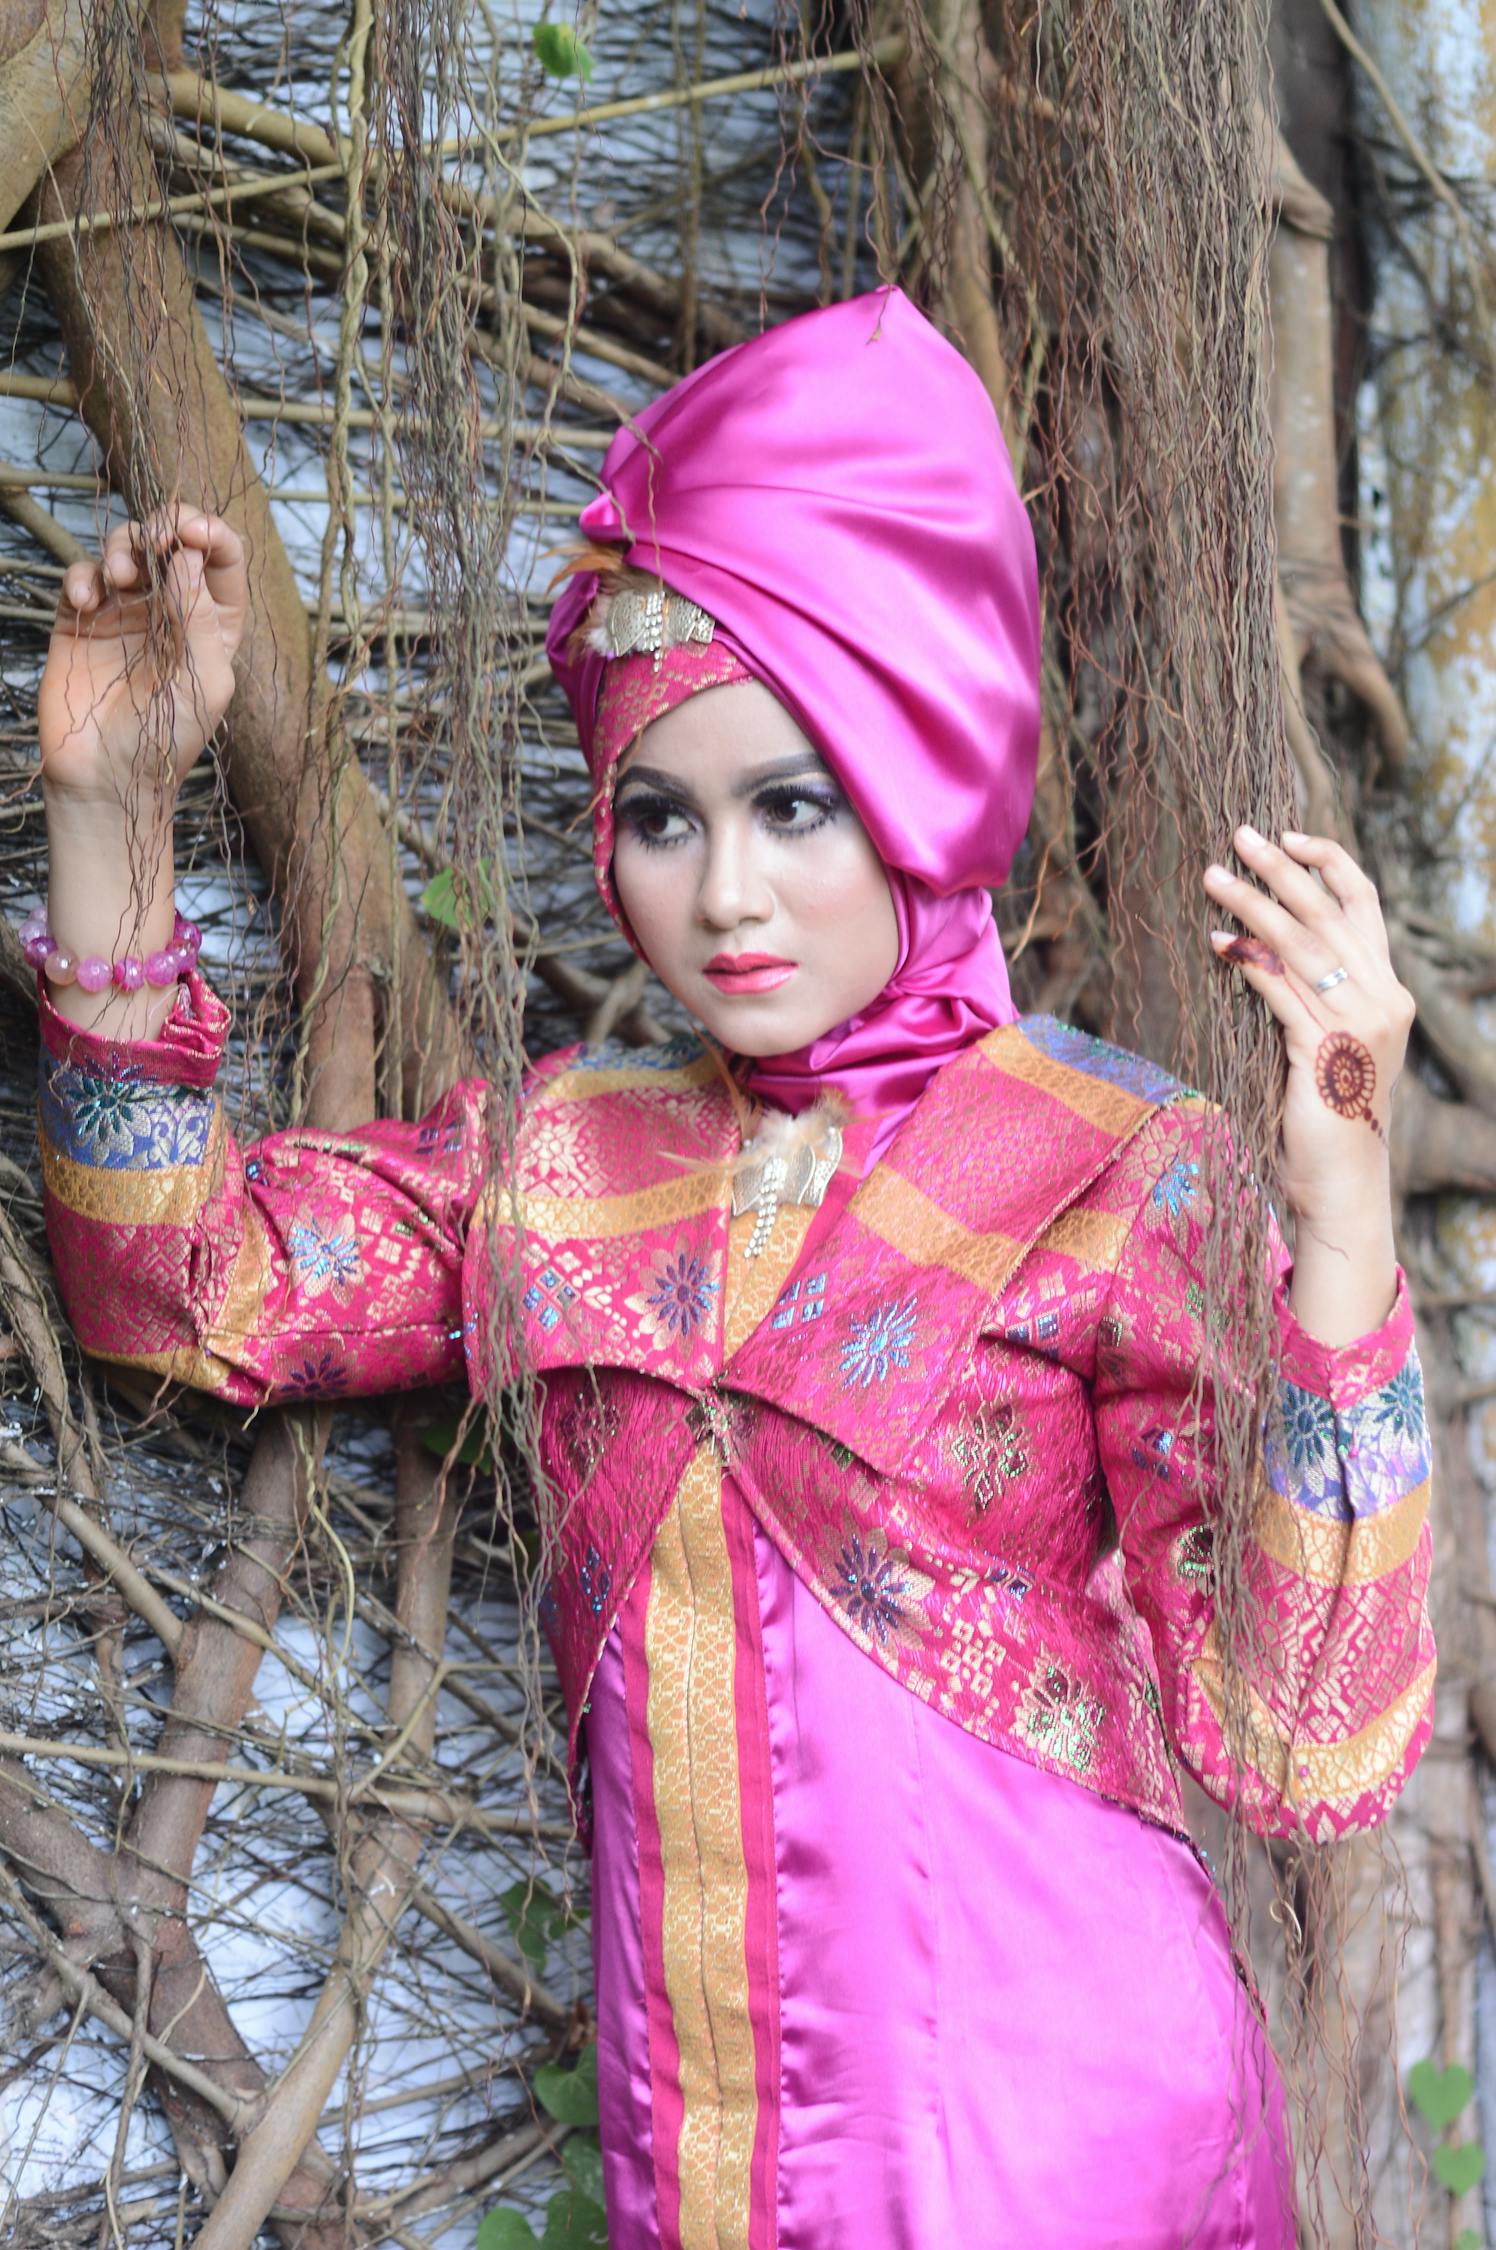 东盟服装市场分析：泰国人爱穿红着绿，印尼人青睐本土品牌 | Ecer Blog